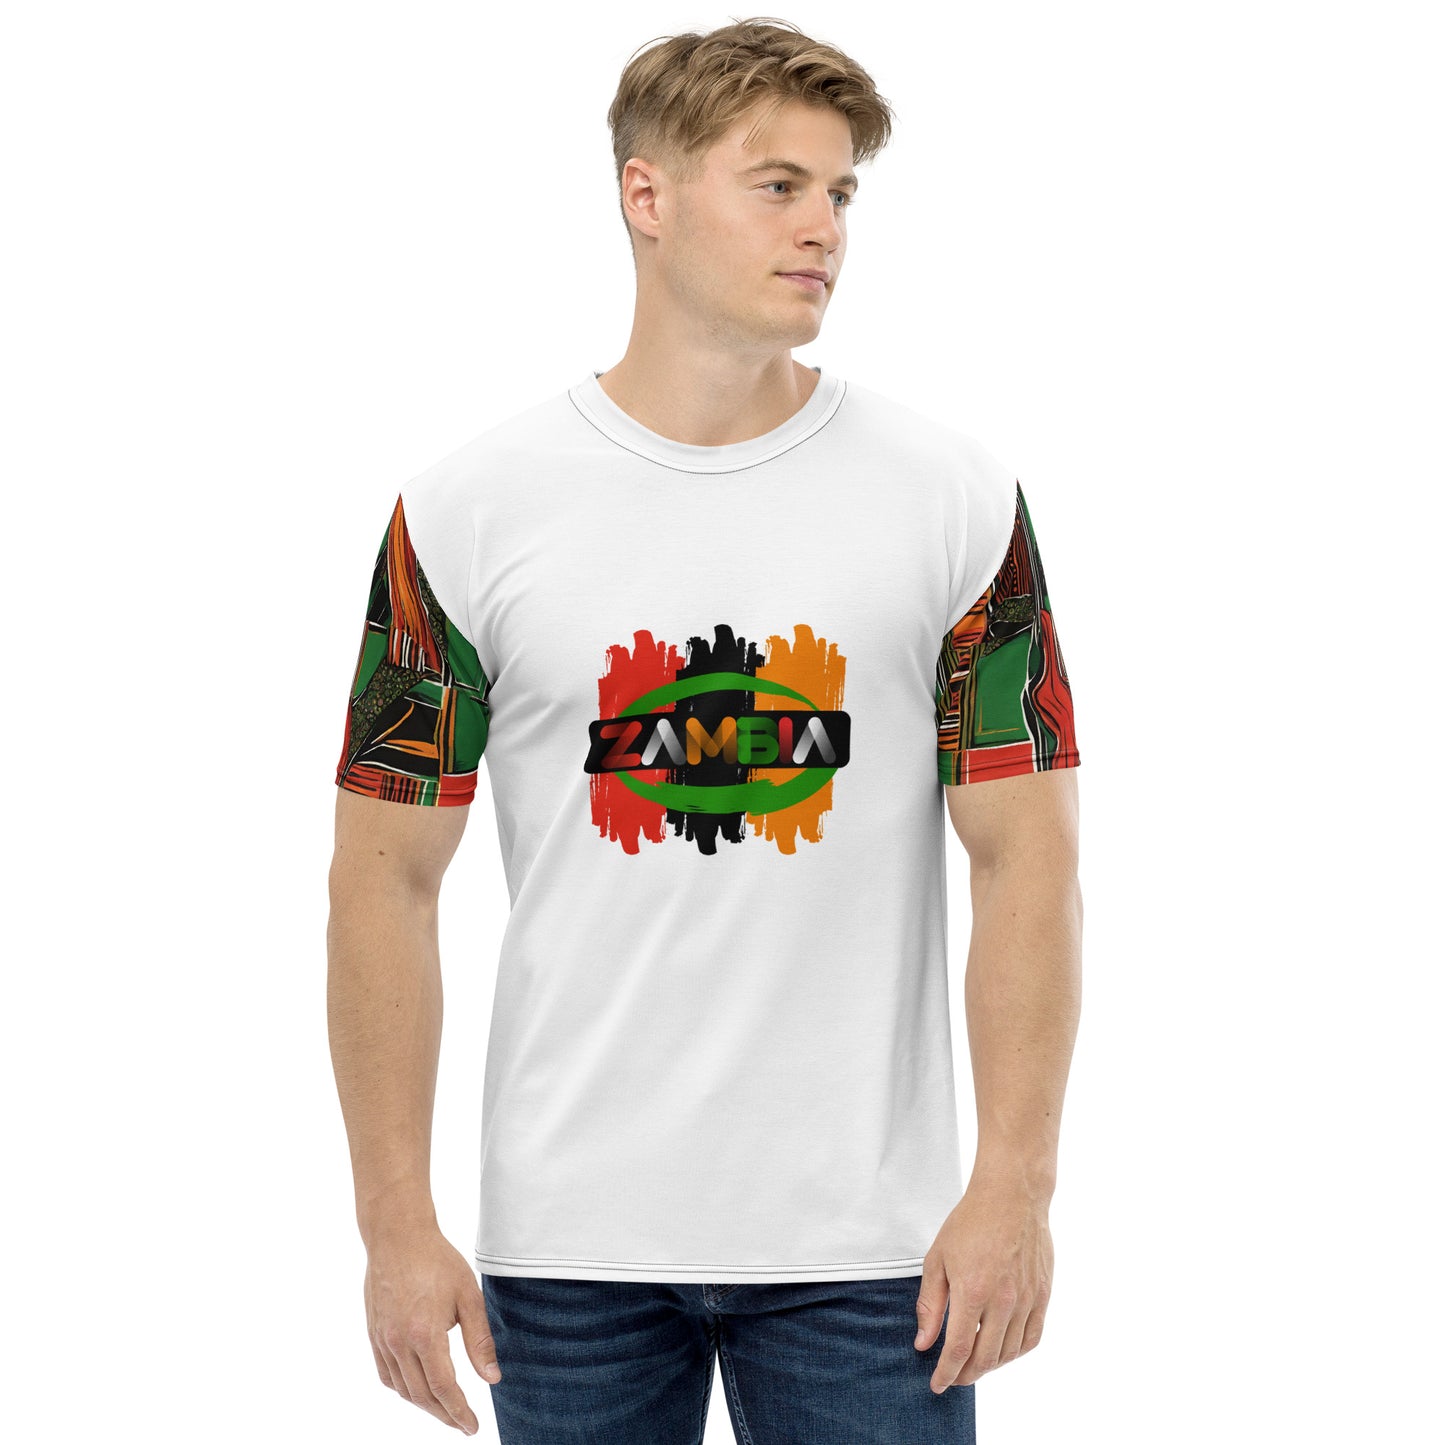 Men's ZAMBIA Afro sleeve t-shirt